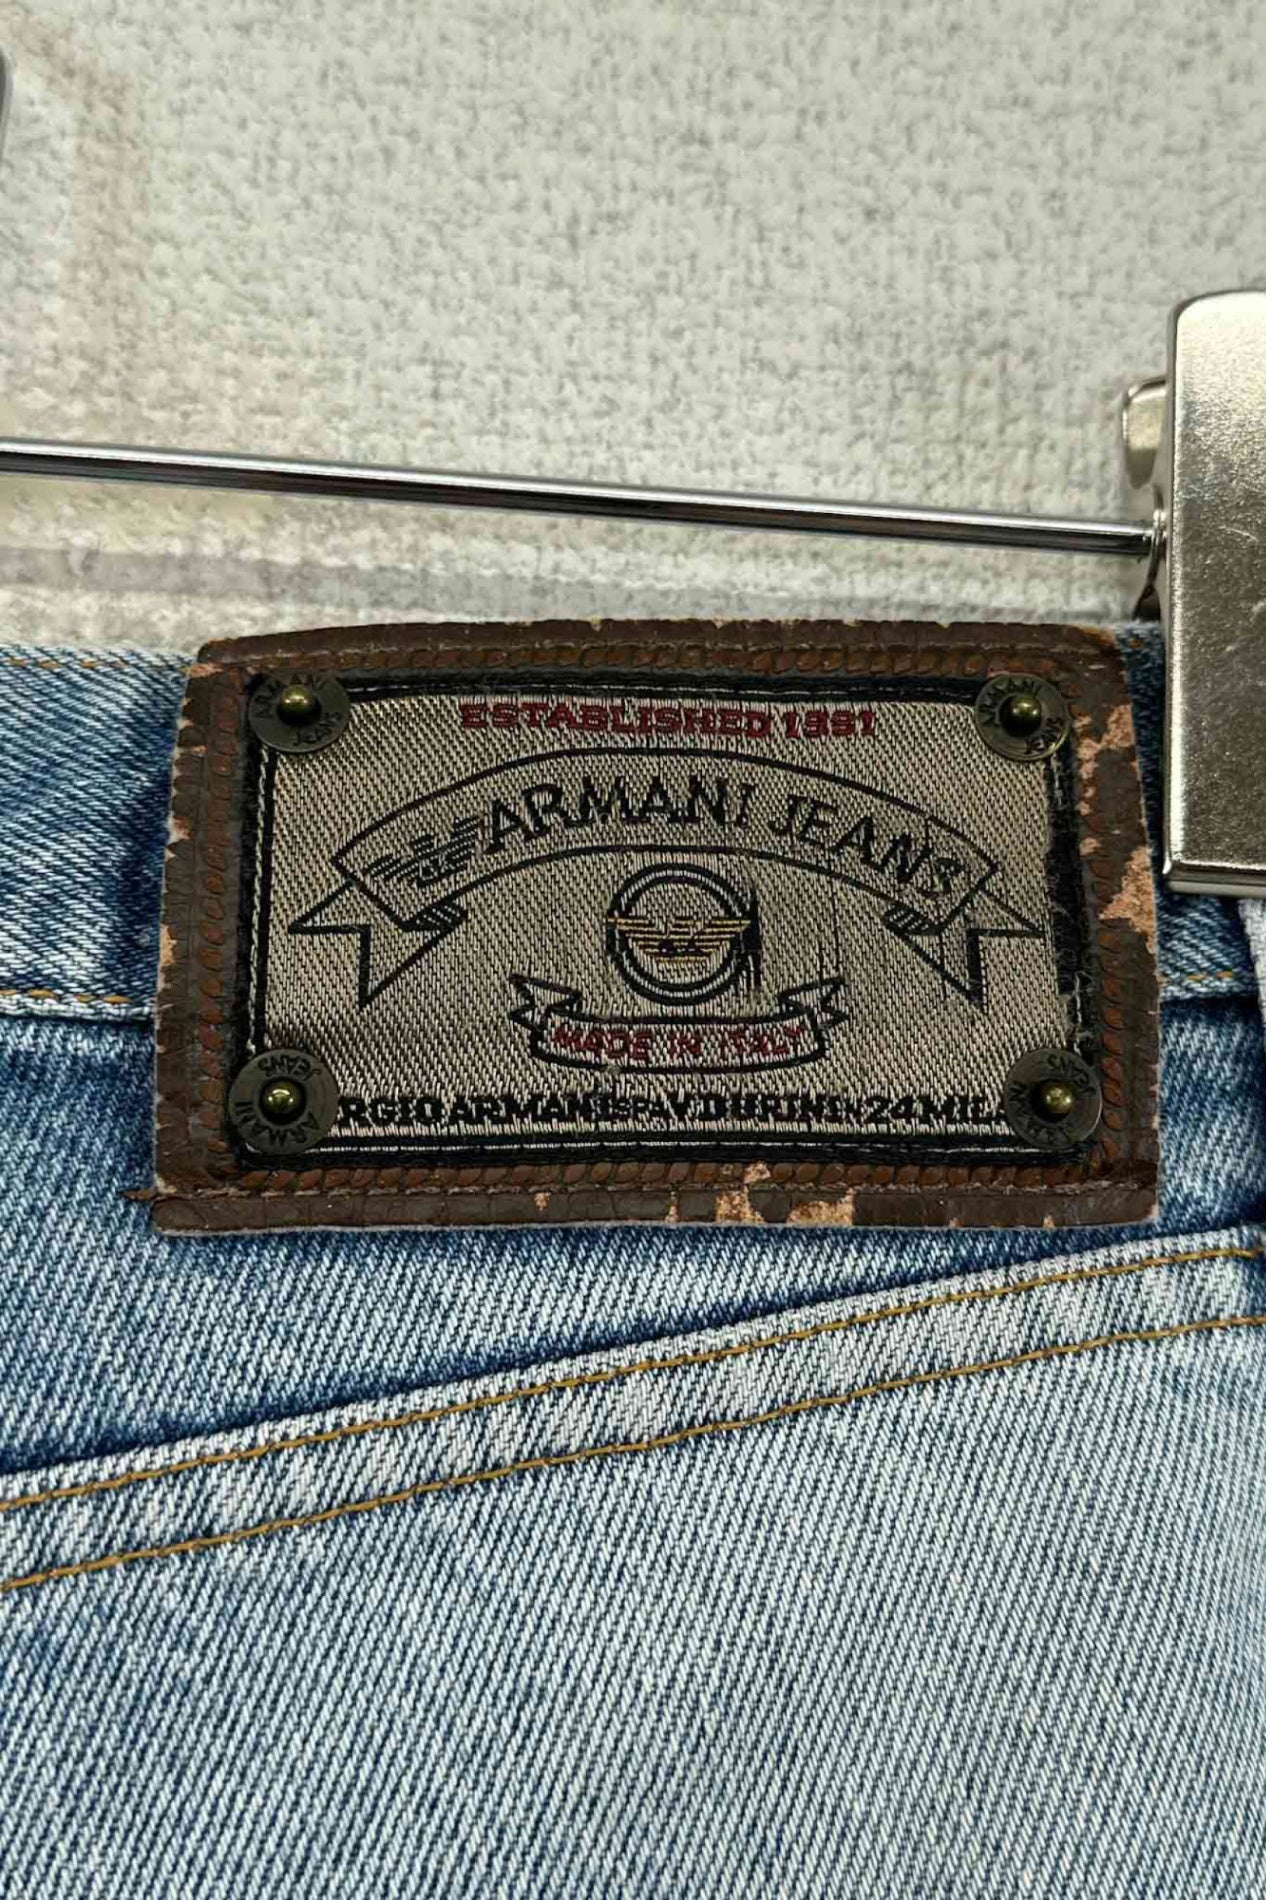 意大利制造 ARMANI JEANS 牛仔裤